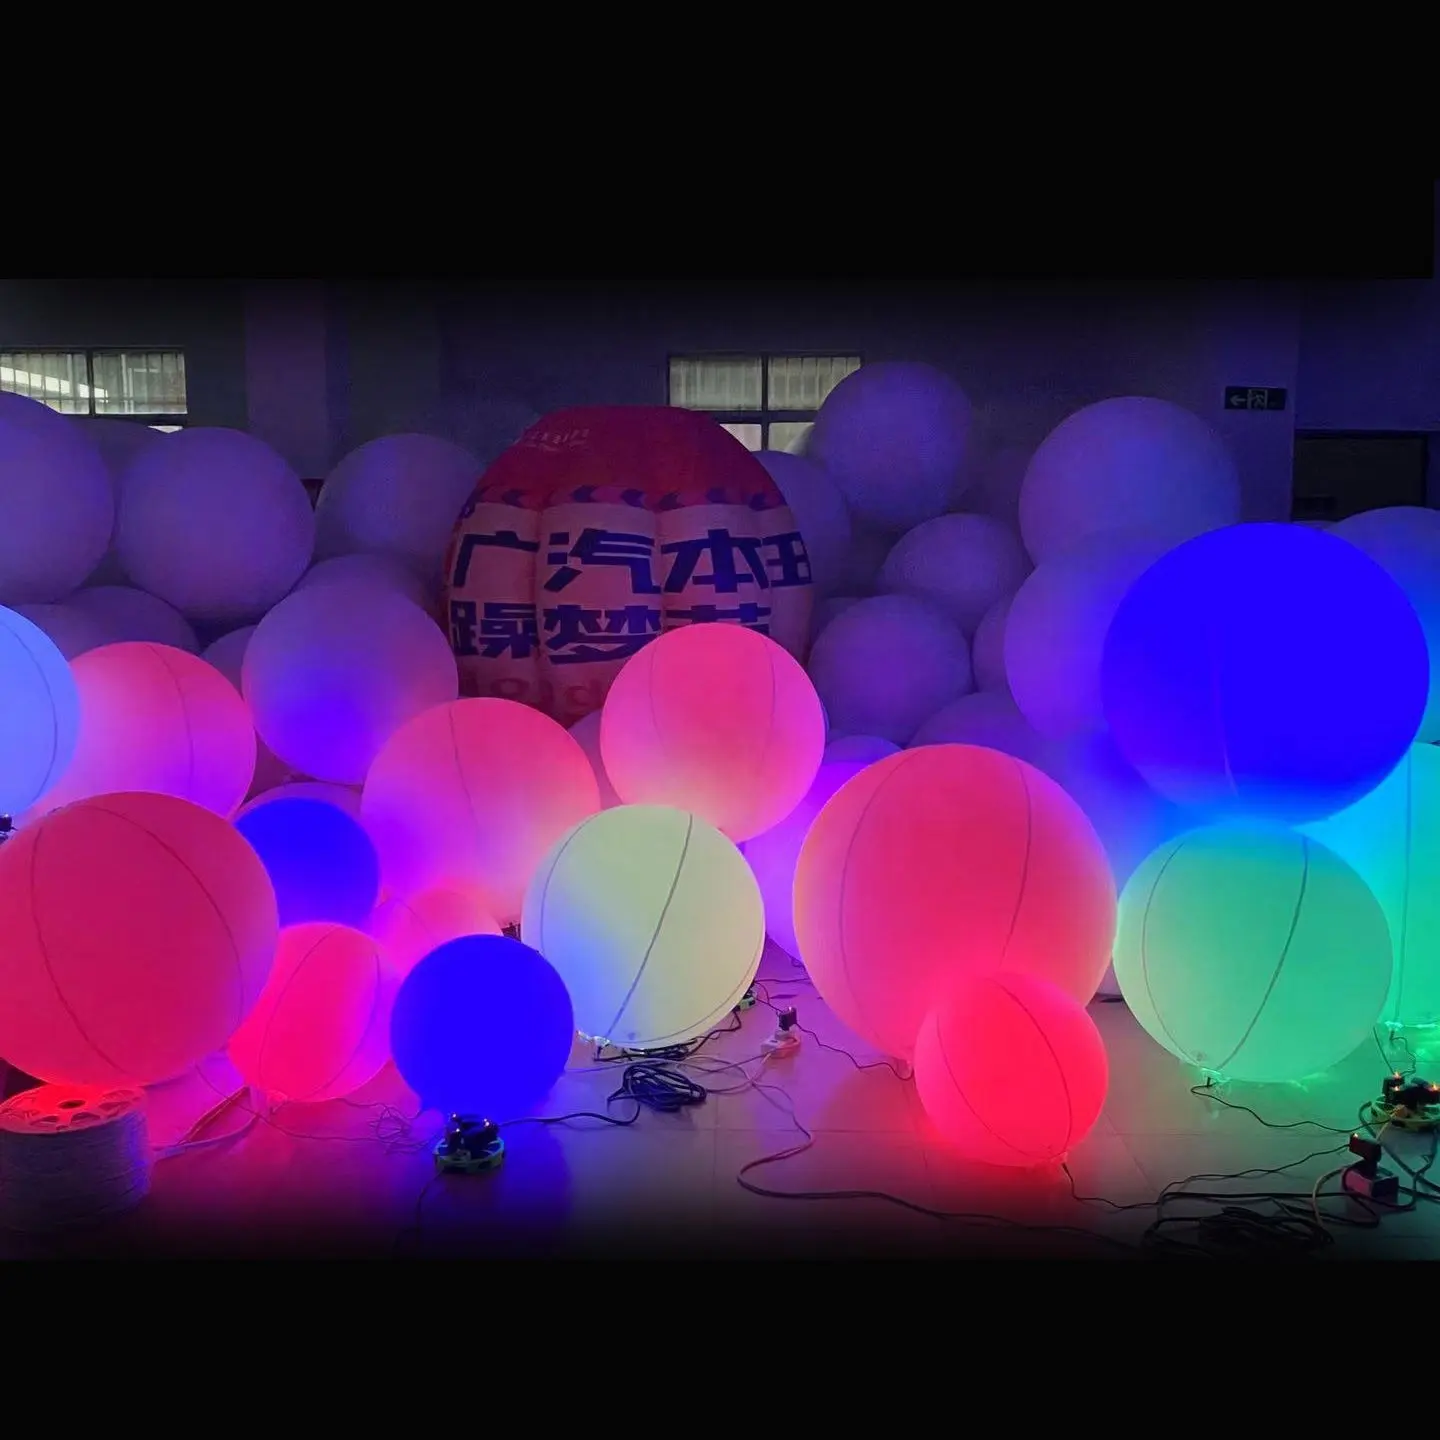 Esferas infláveis ip 68, à prova d' água, para praia, festa, decoração, piscina, para iluminar,/palco, festa, esfera inflável